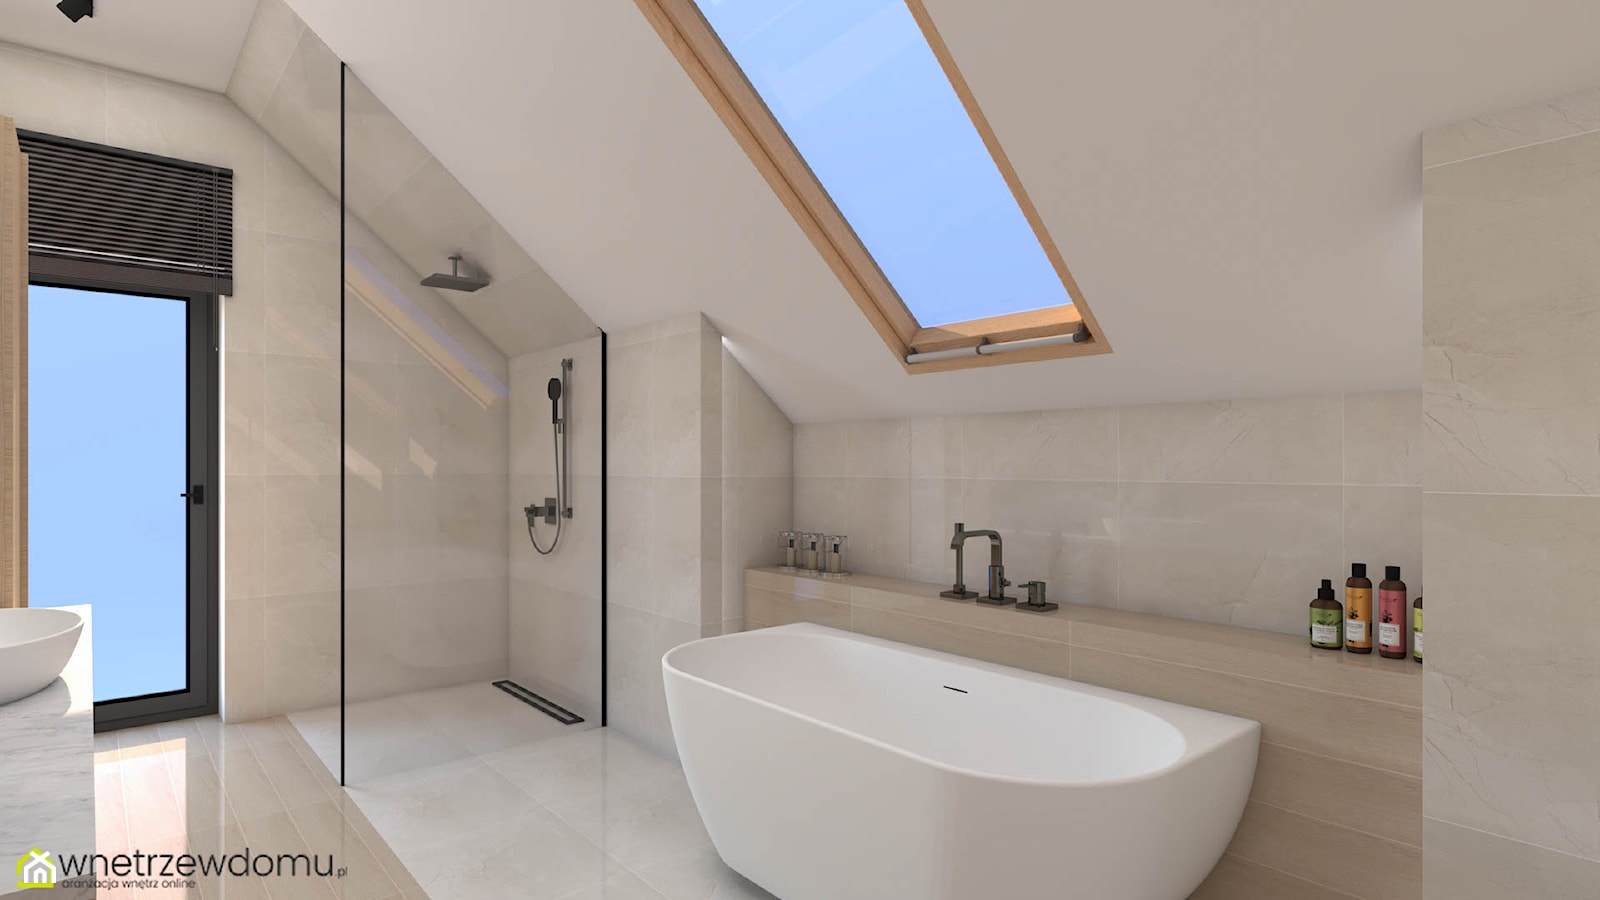 Nowoczesna forma w łazience z oknem dachowym - zdjęcie od wnetrzewdomu - Homebook